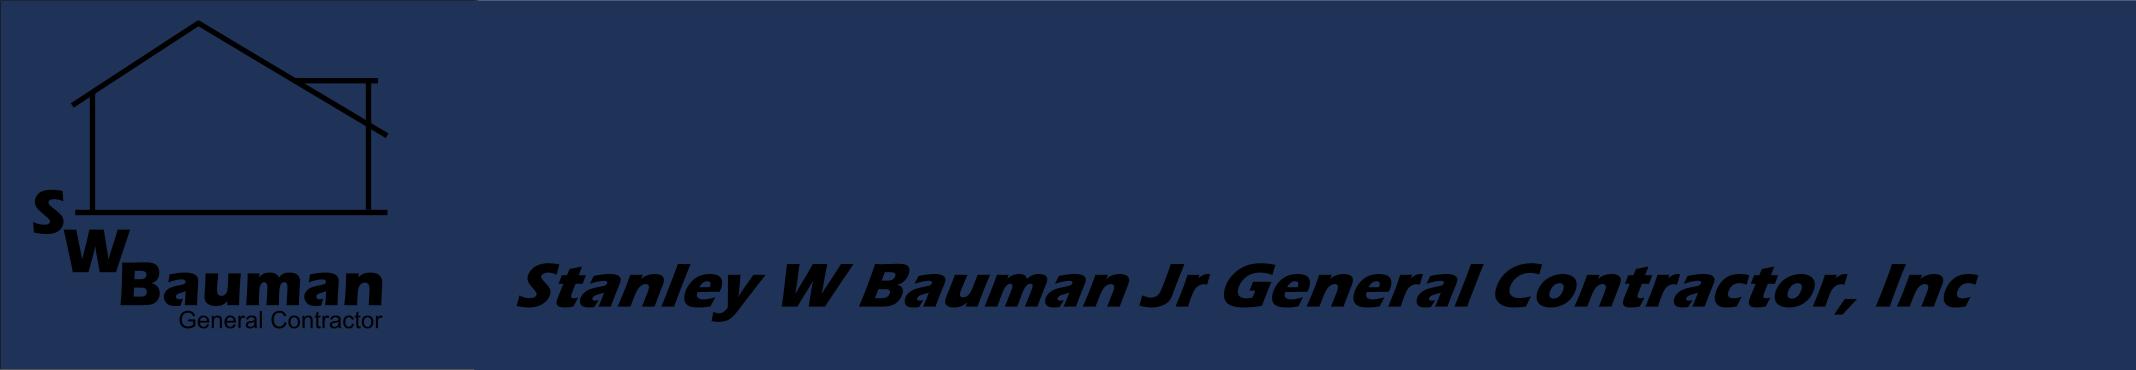 HOME-Stanley W Bauman Jr General Contractor, Inc